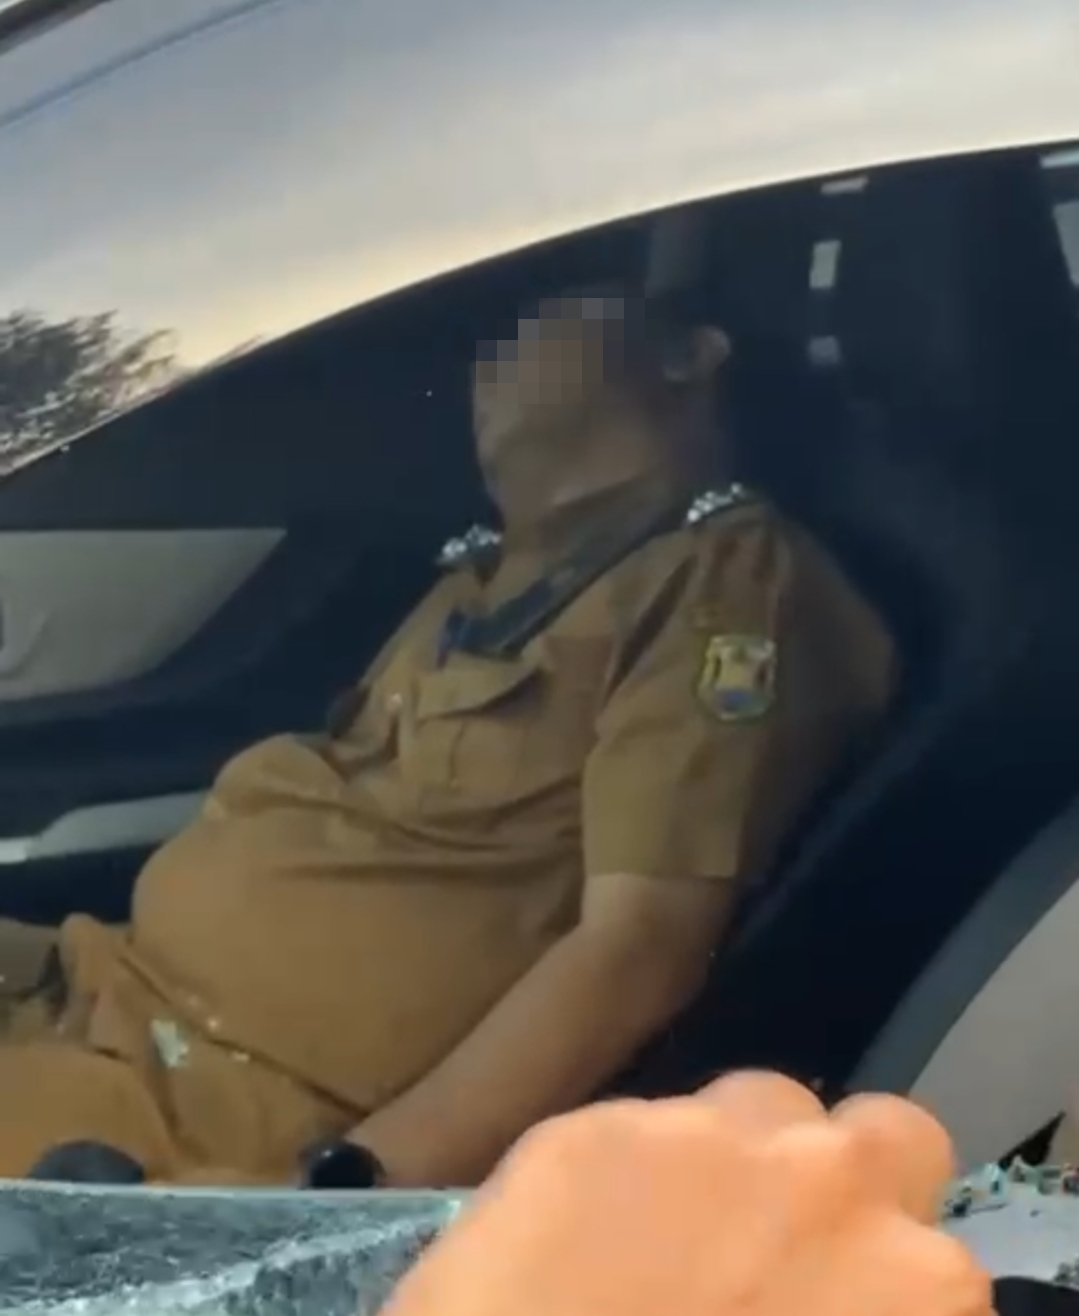 Viral! VIdeo Pejabat Dispenda Bandar Lampung Ditemukan Tewas di Mobil, Diduga Karena Ini